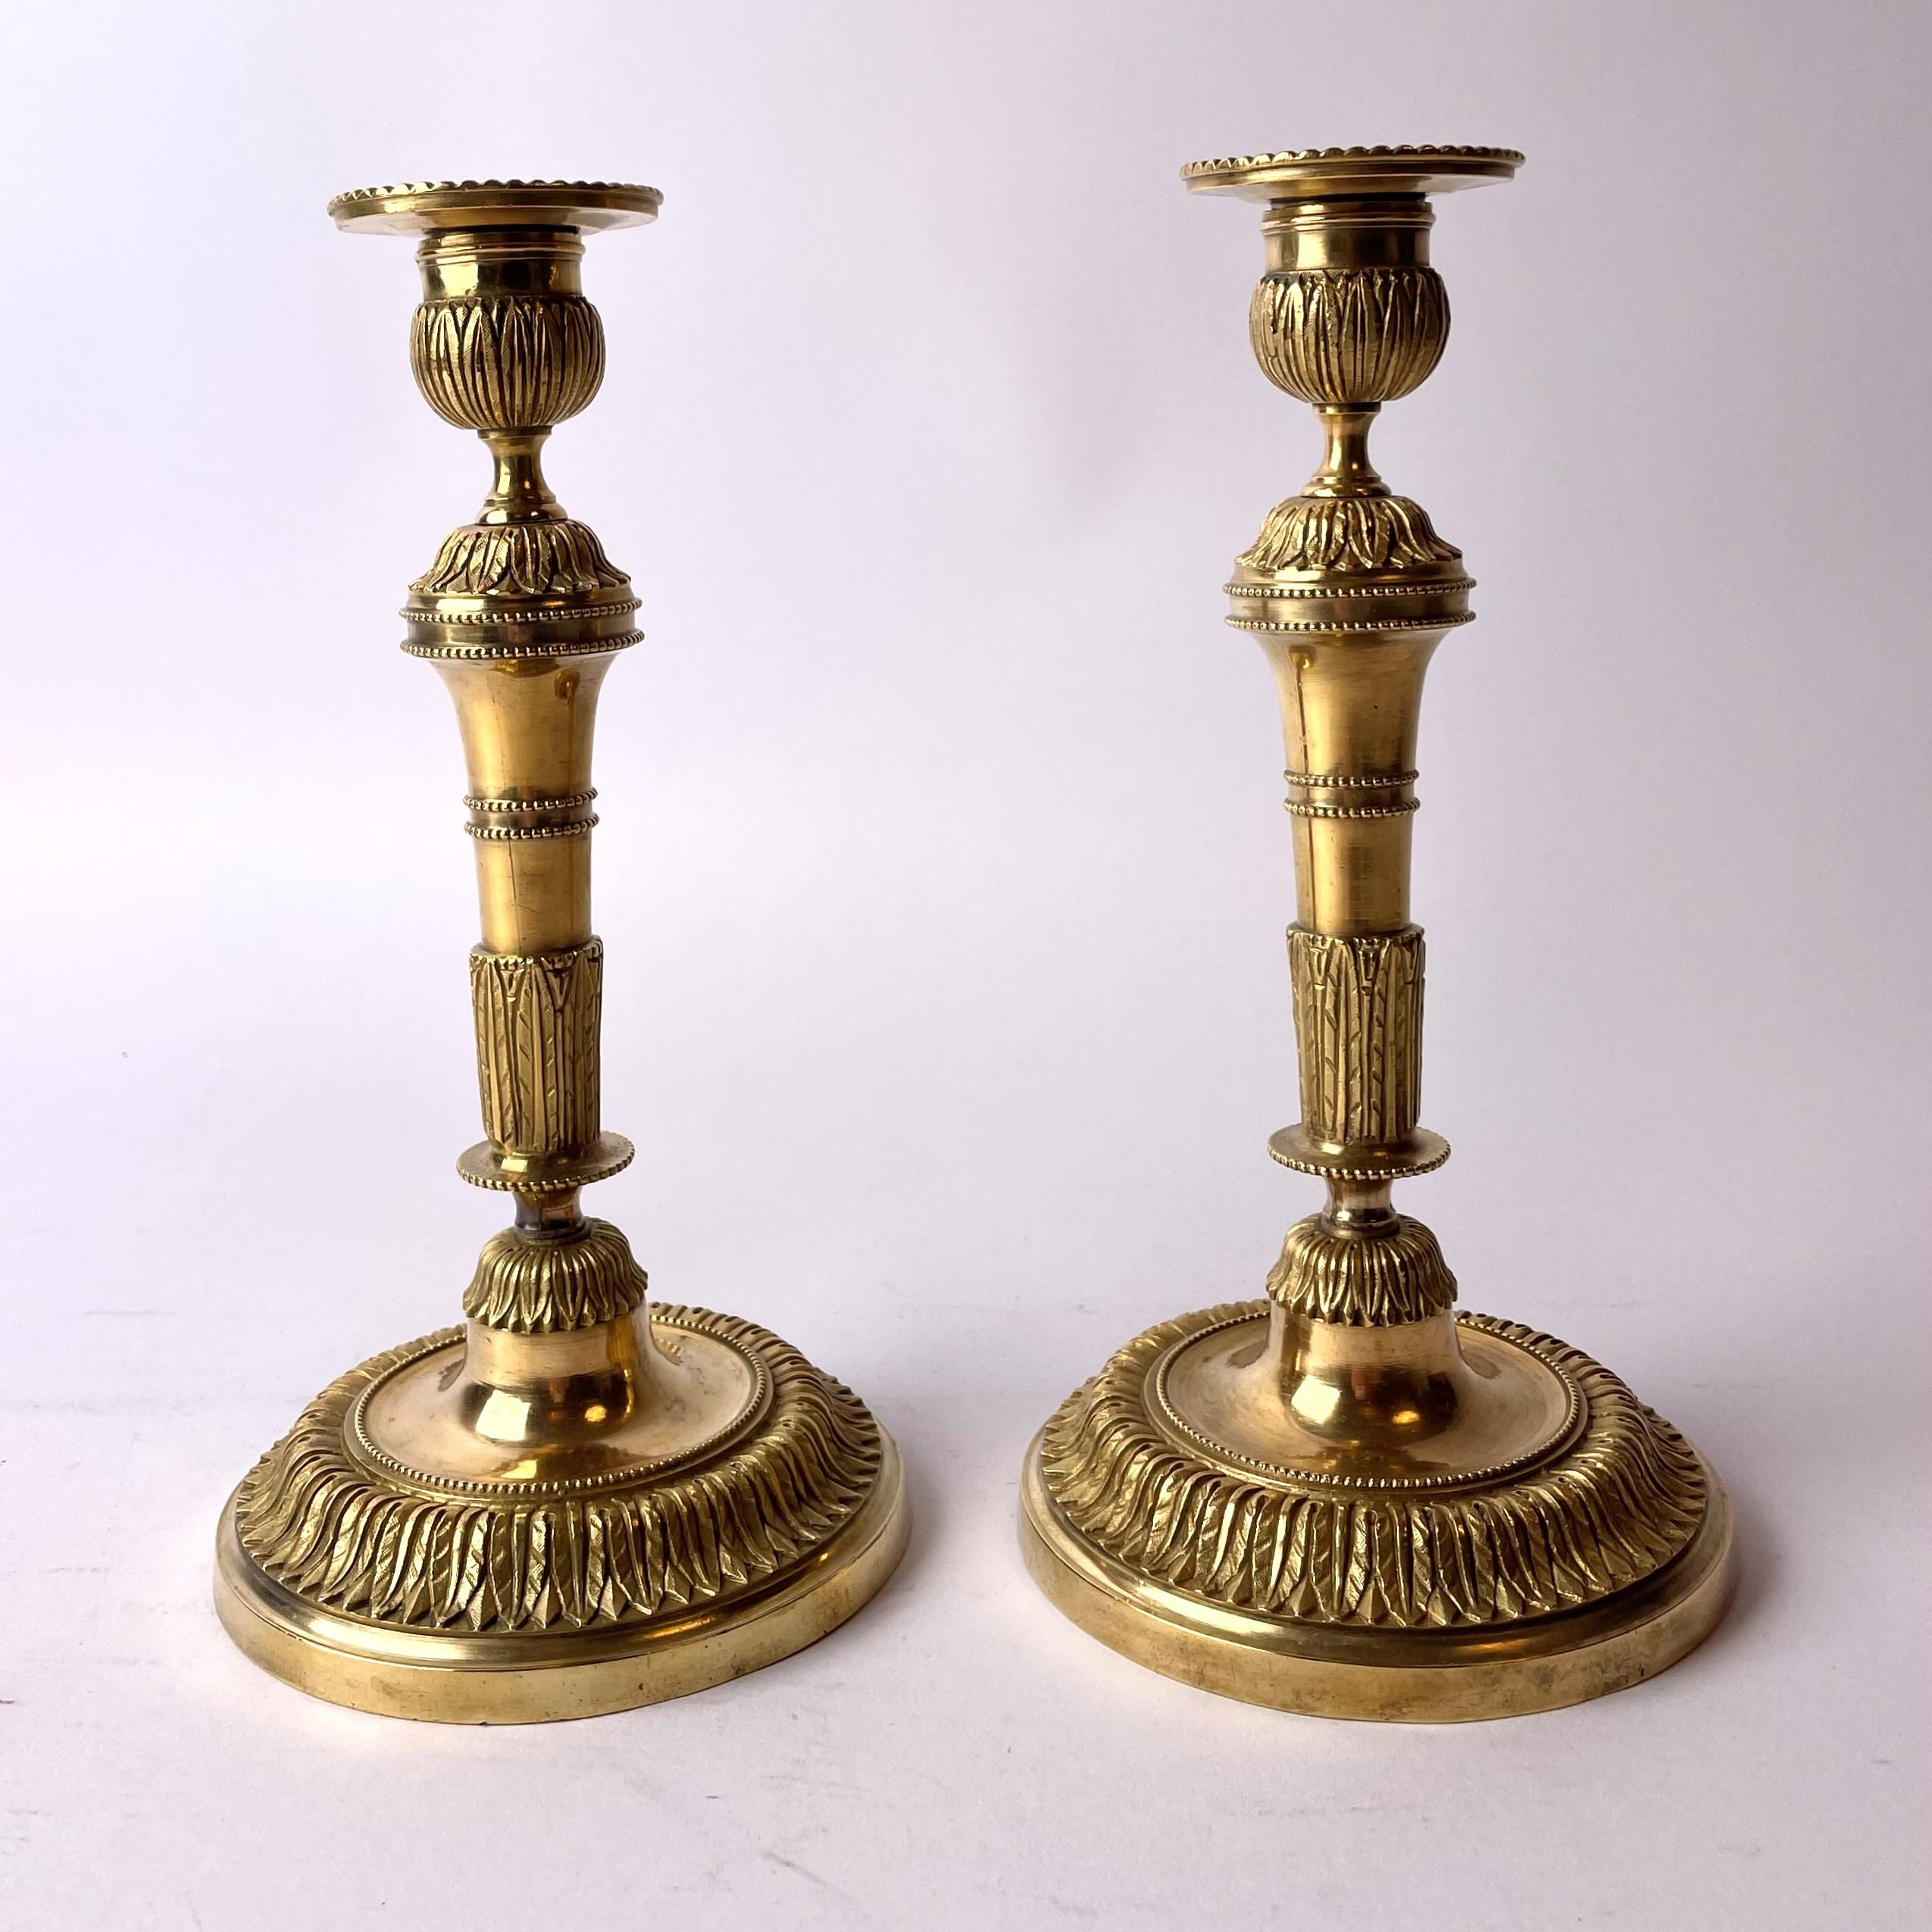 Ein Paar seltene und schöne französische Directoire-Leuchter aus vergoldeter Bronze aus dem späten 18. Jahrhundert.

In sehr gutem antiken Zustand.

Im unteren Teil des Fußes mit 